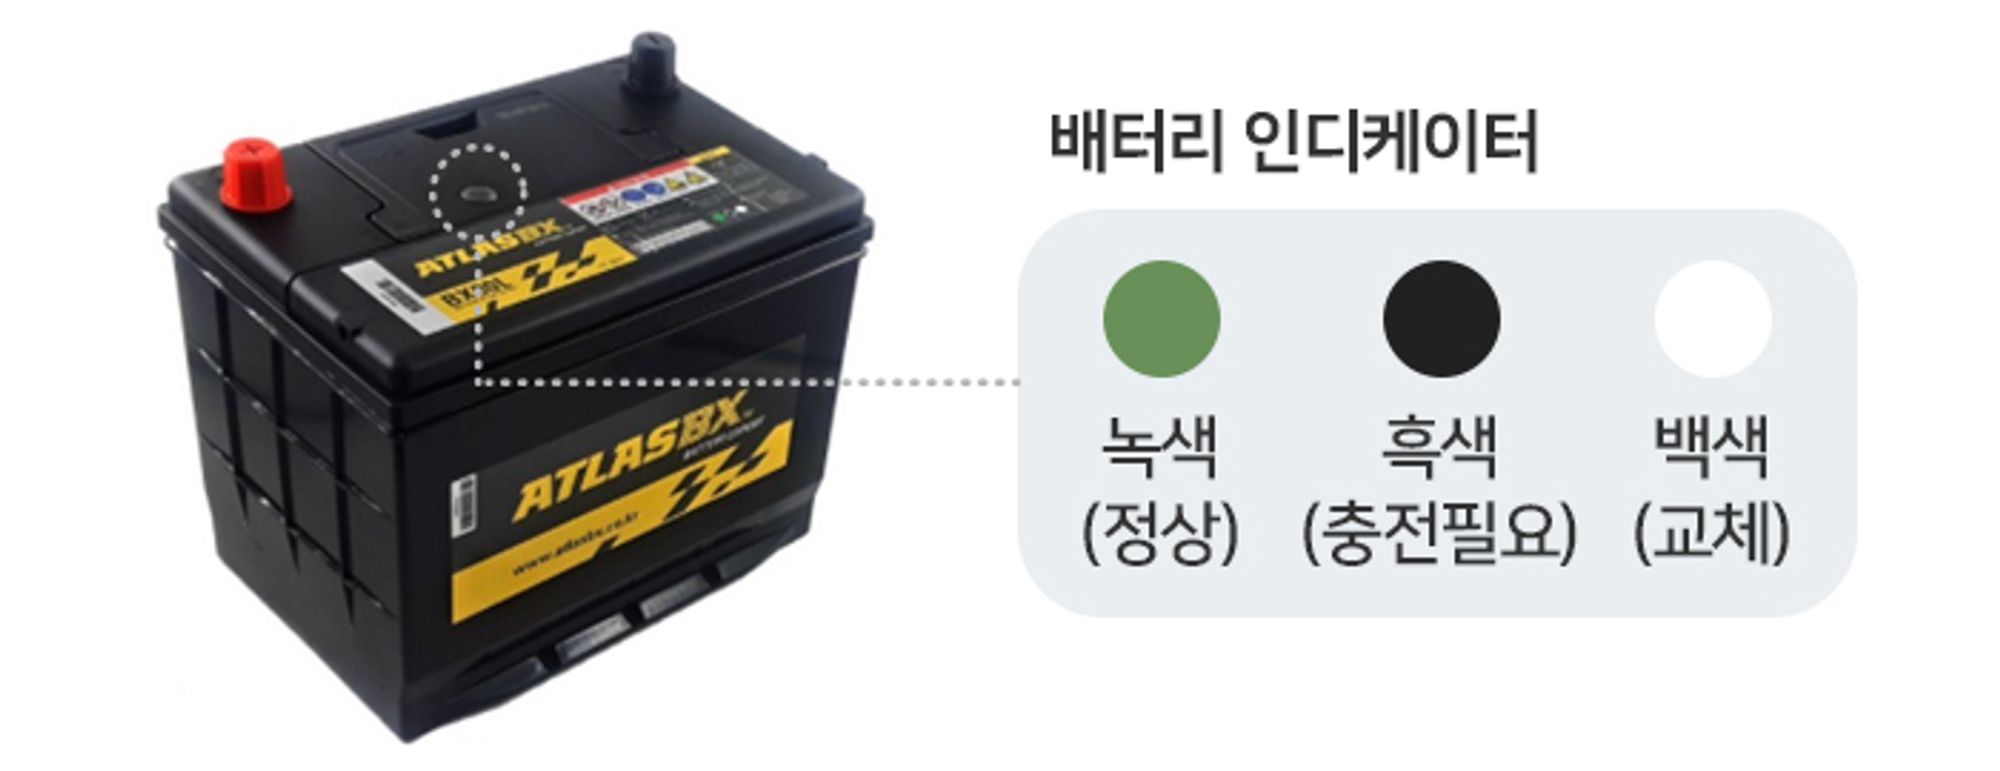 자동차 배터리 교체, 자동차 배터리 확인을 위한 배터리 인디케이터, 녹색: 정상, 흑색: 충전 필요, 백색: 교체